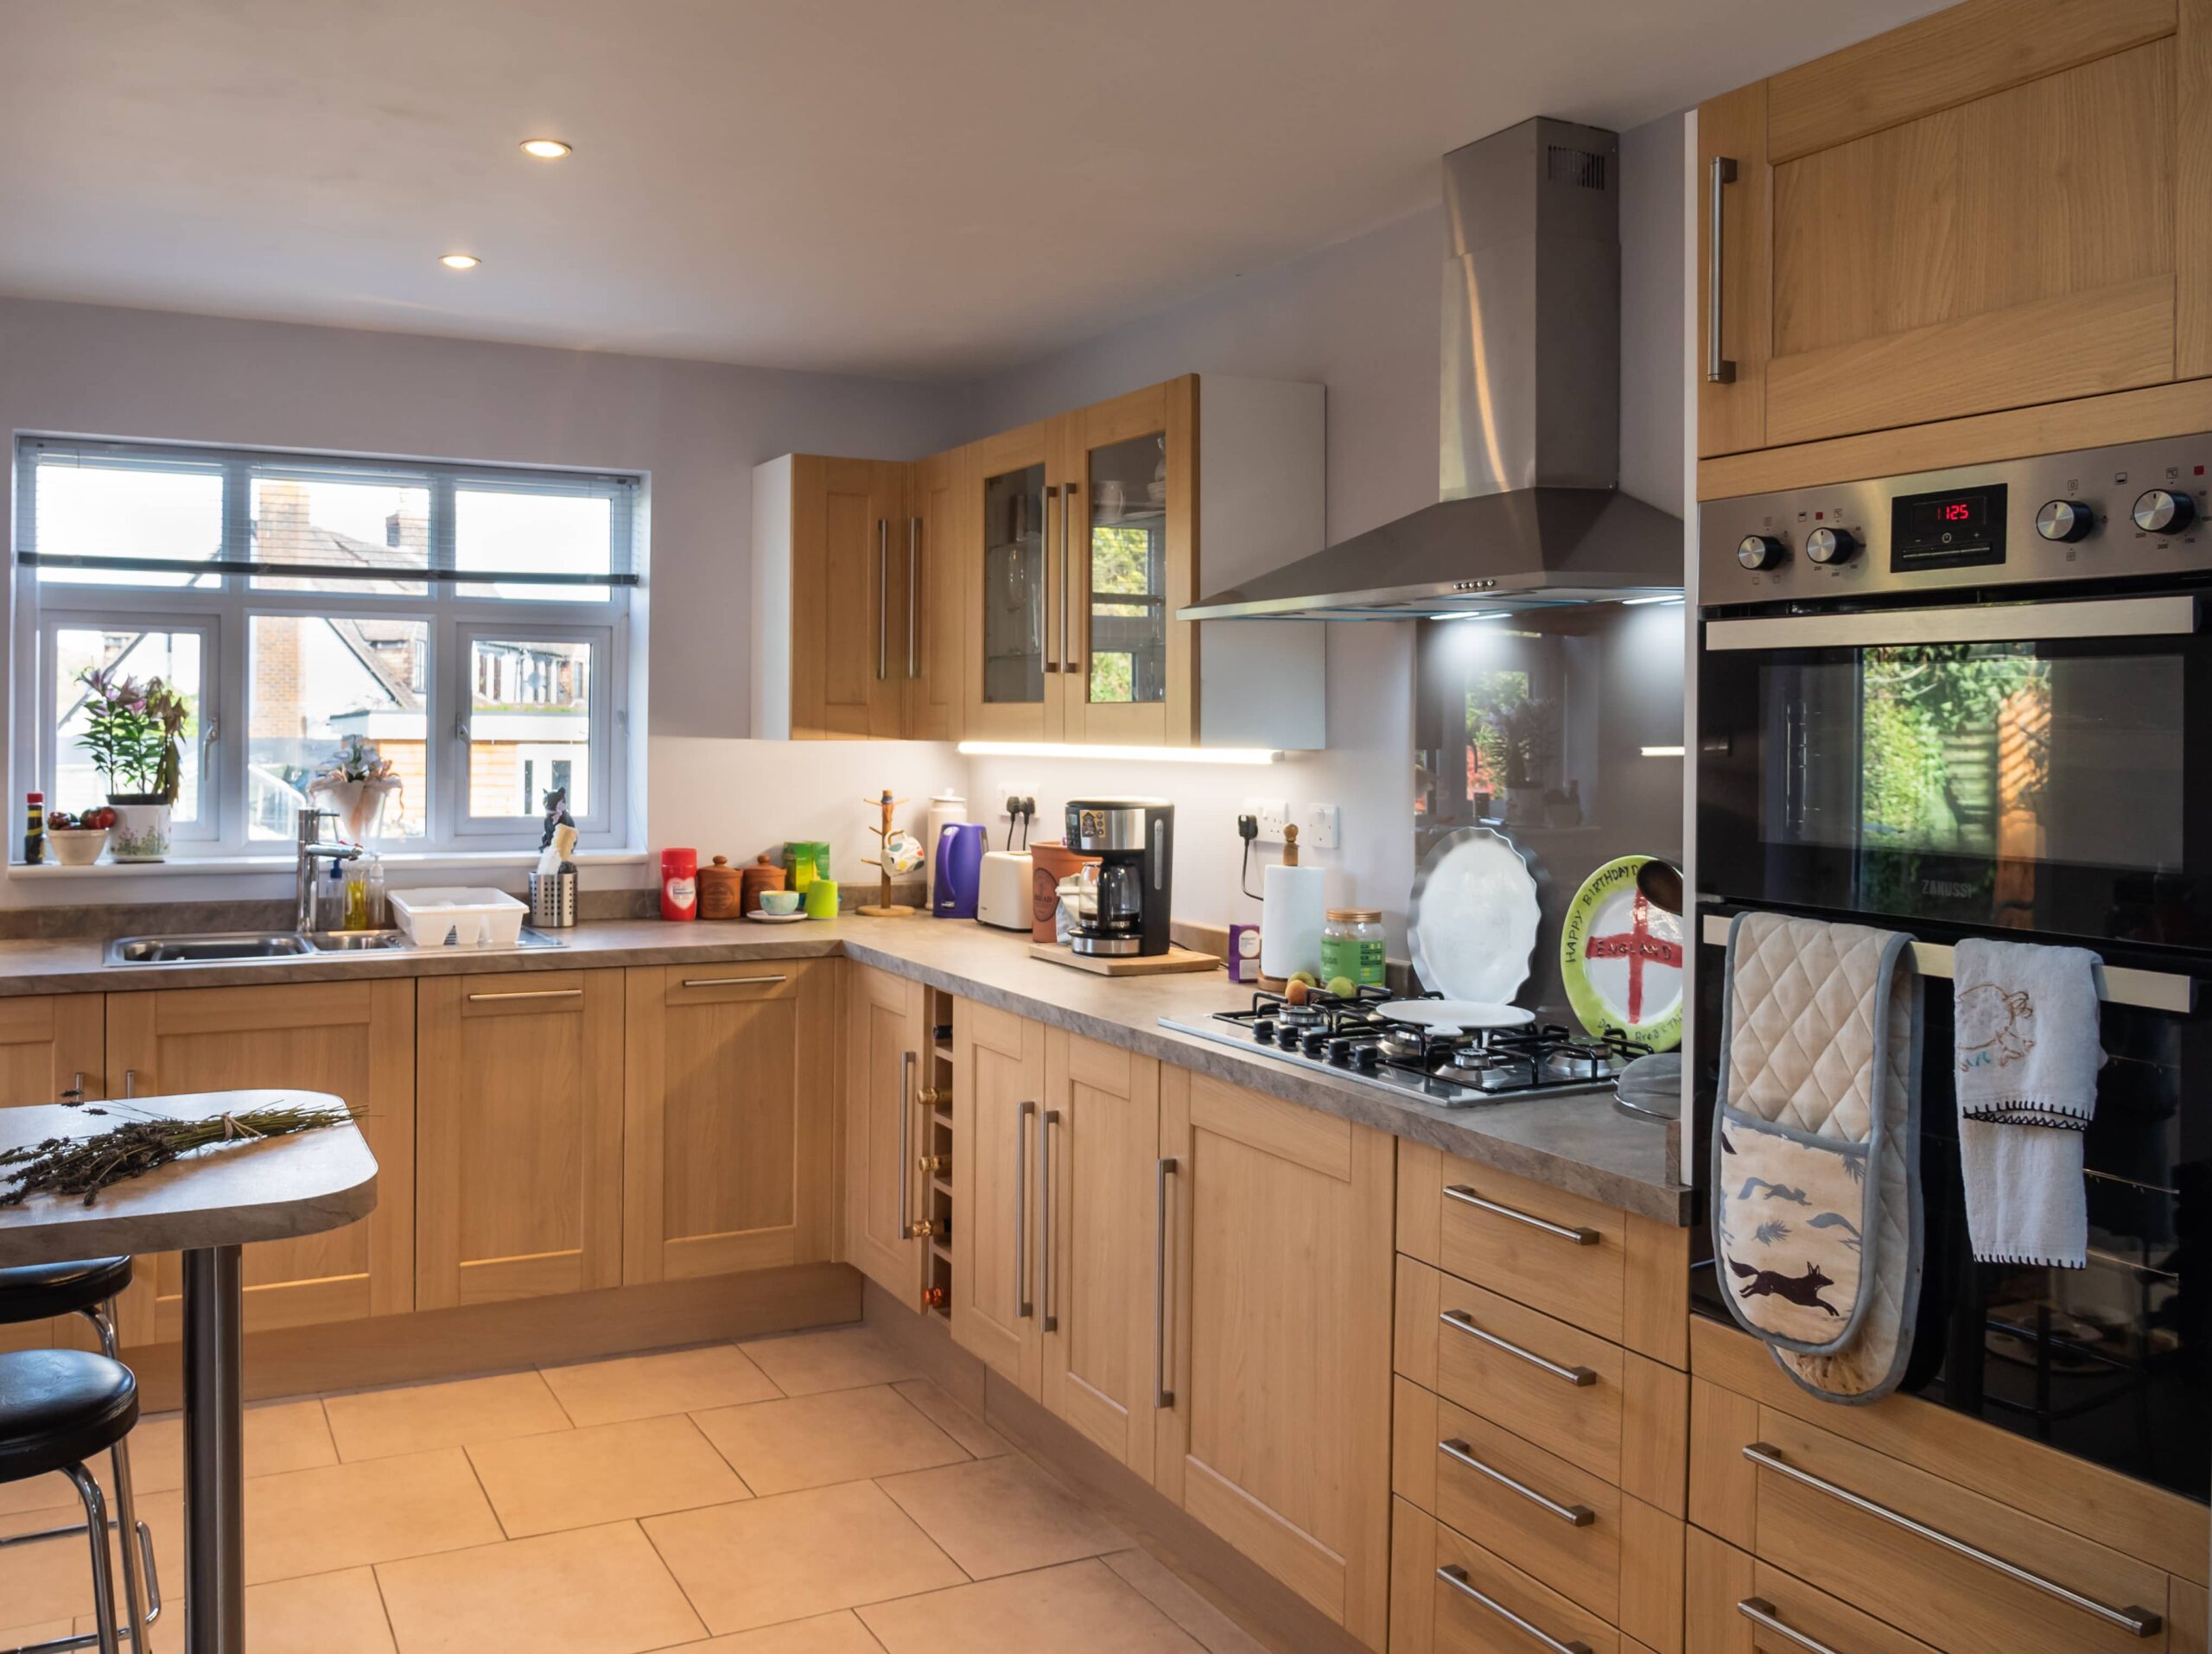 Kitchen extension in Surrey